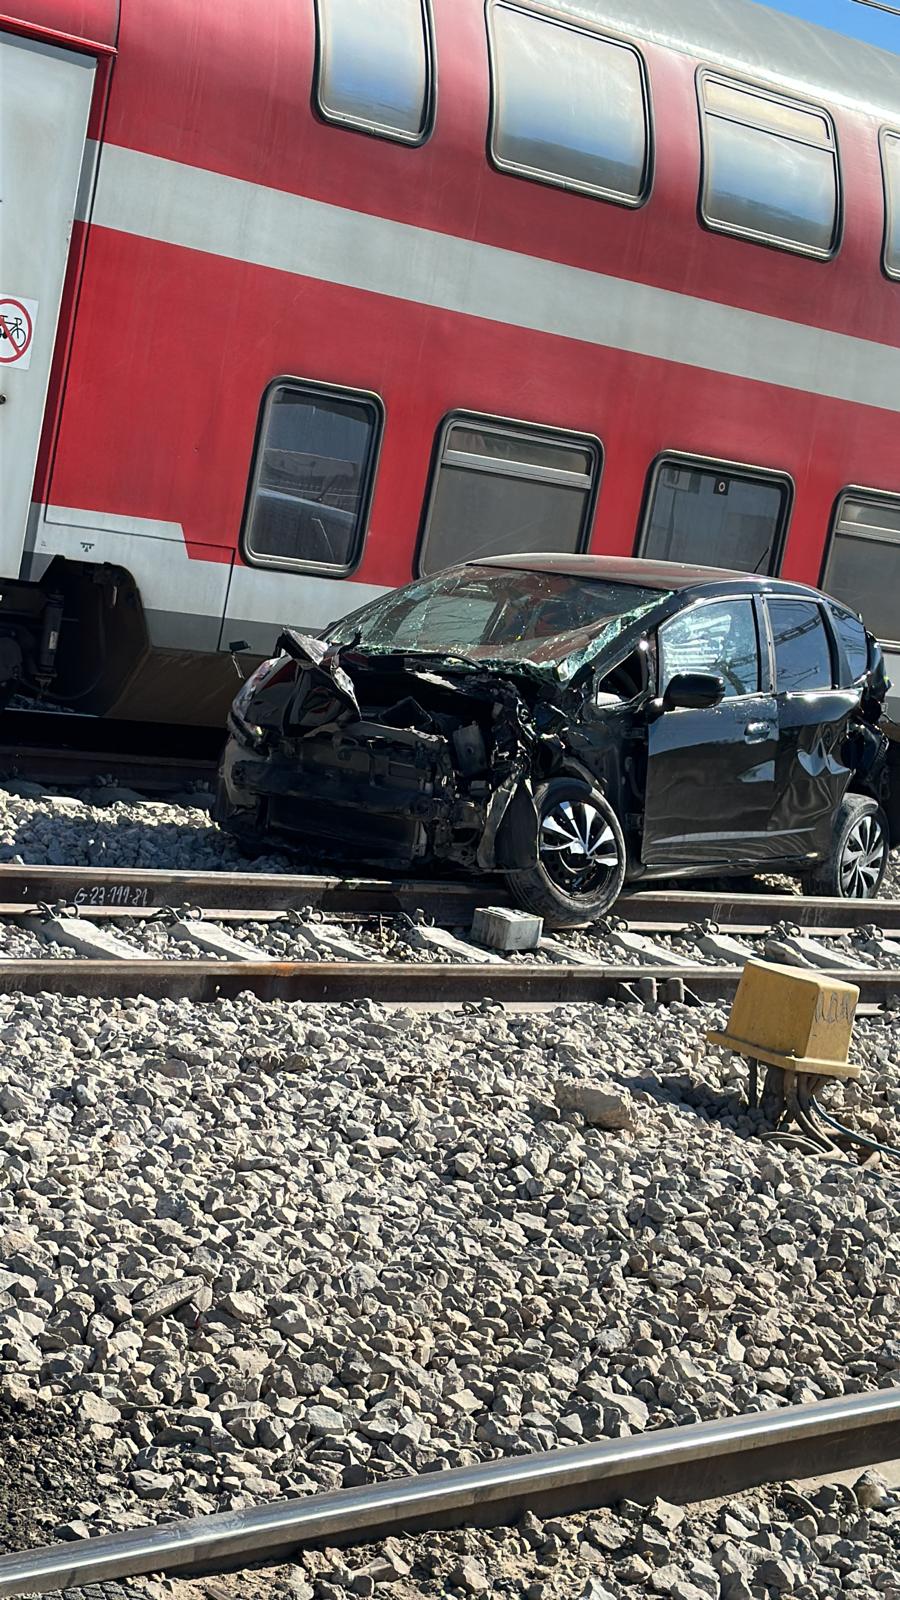  اللد: اصابة متوسطة لسيدتين بحادث تصادم بين مركبة وقطار 